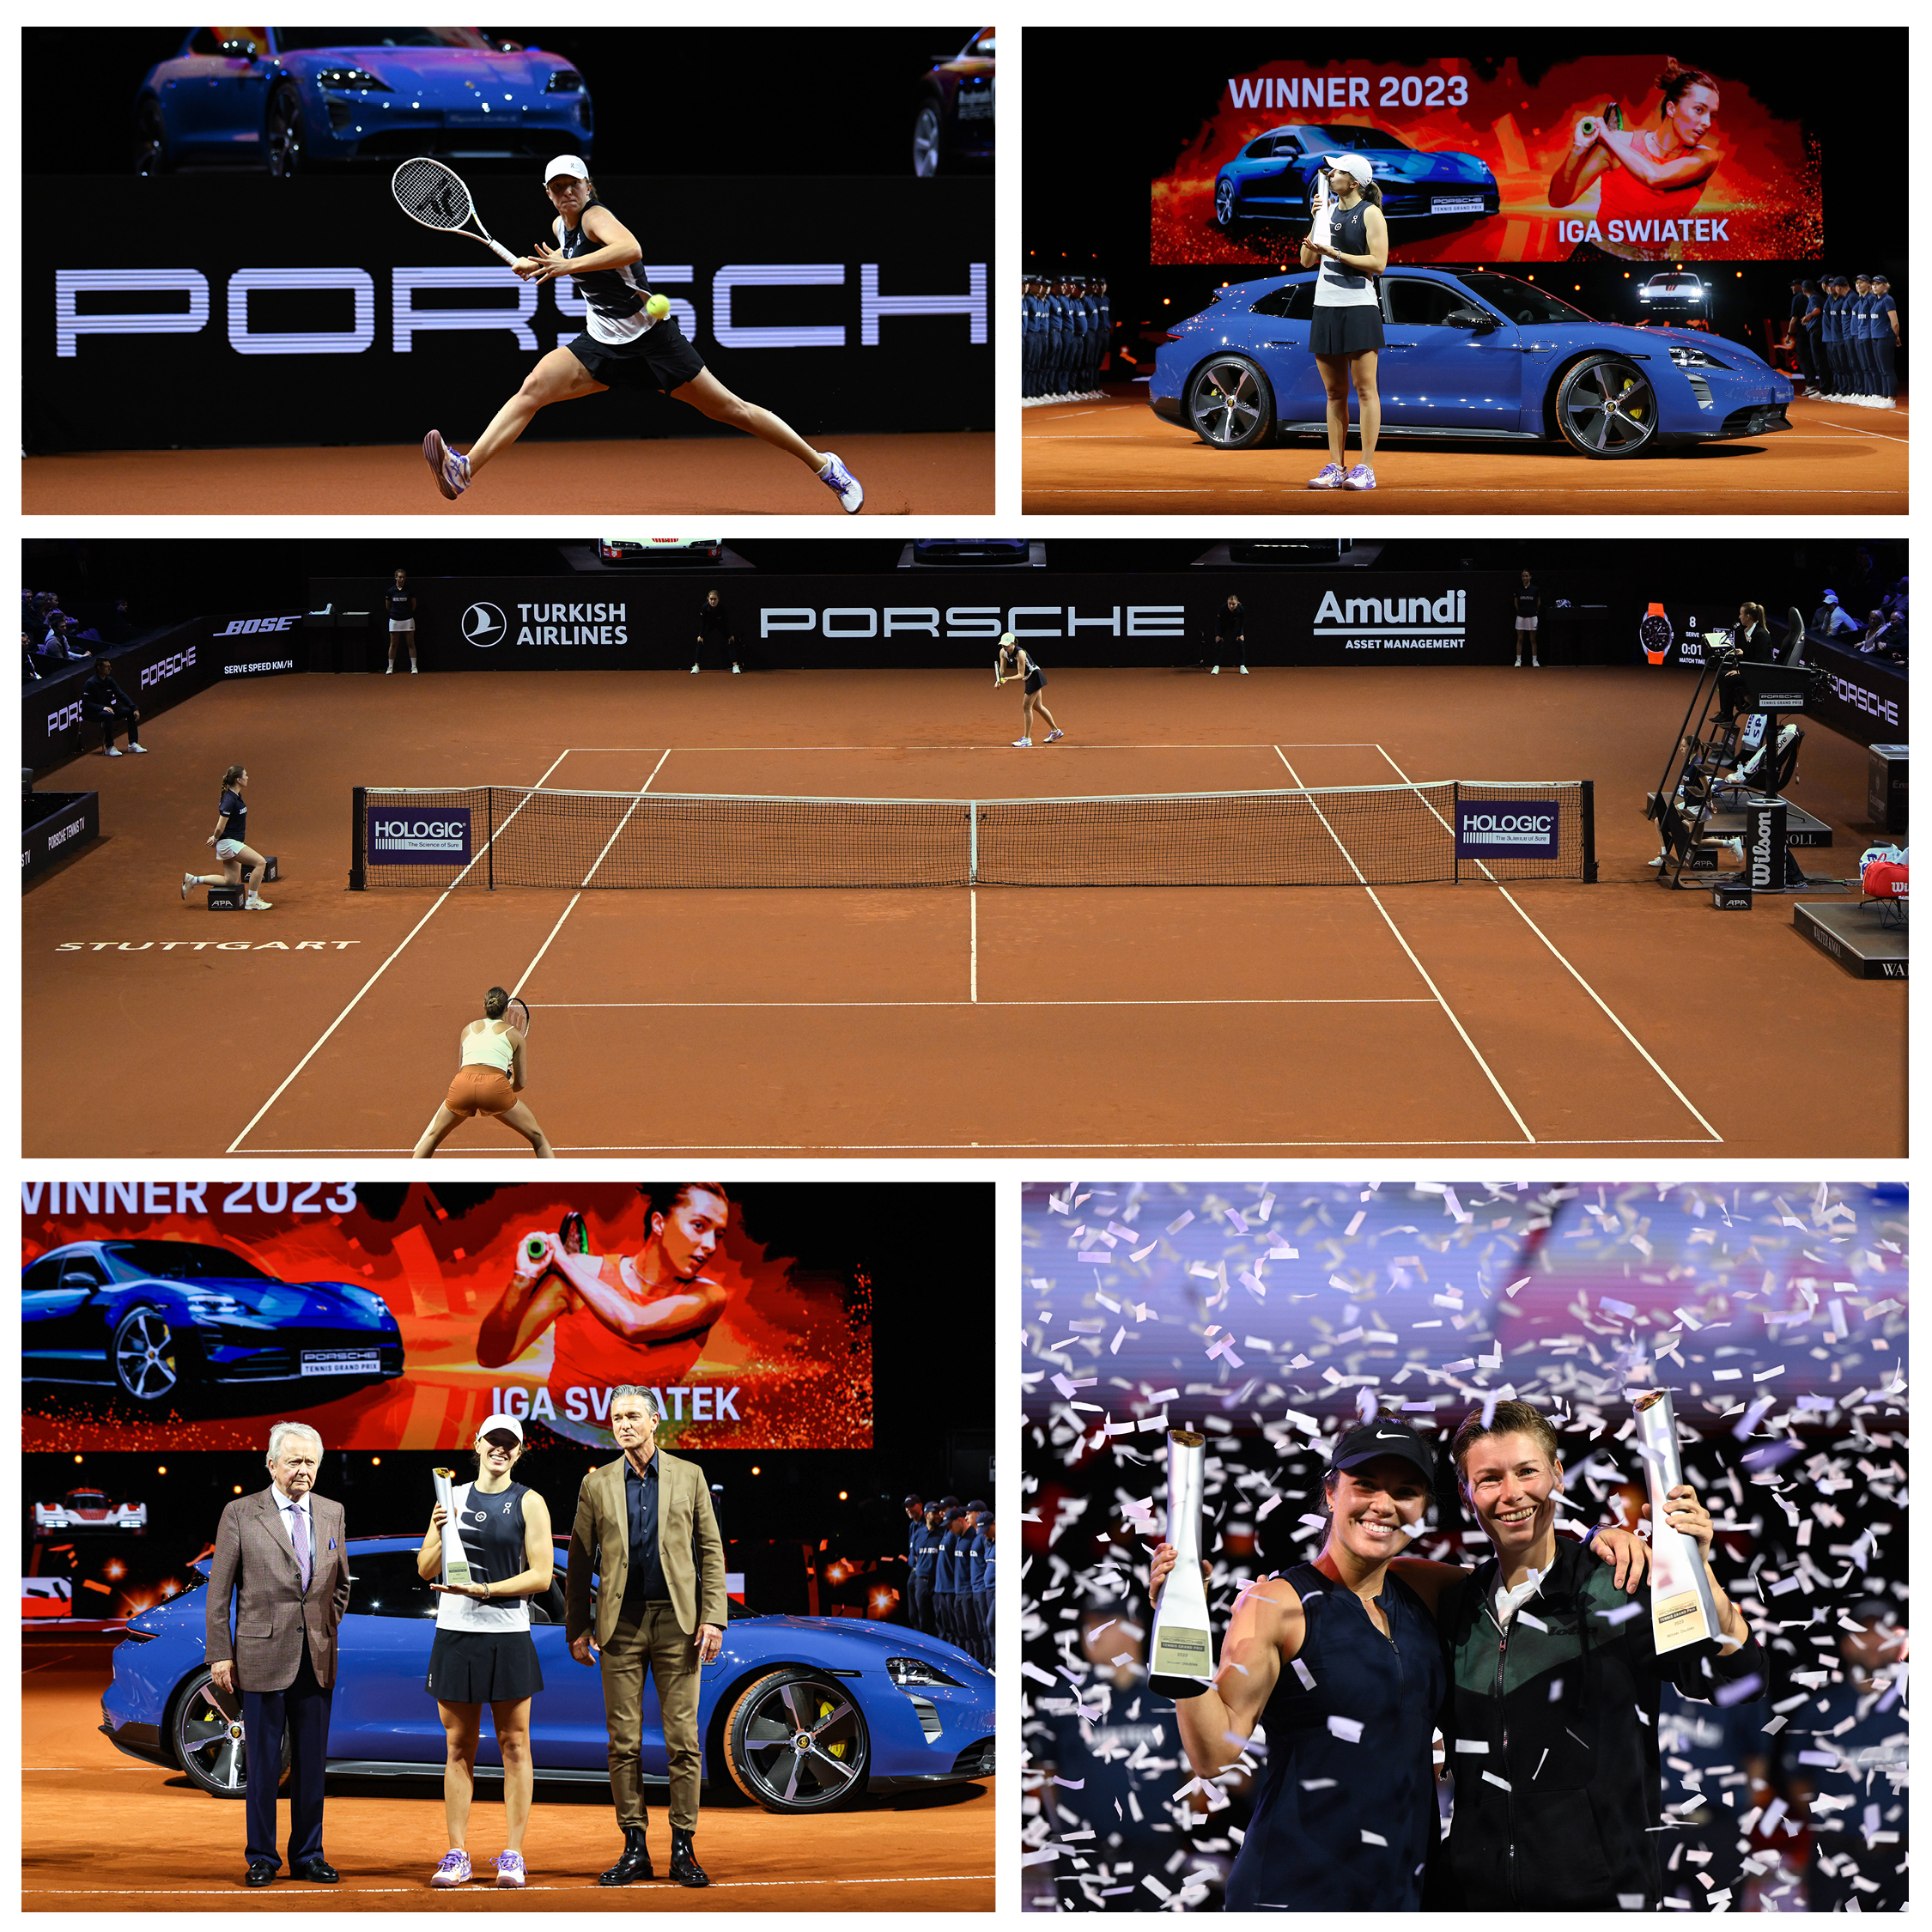 2 große Turniere – namenhafte Spielerinnen – Tennis in der #Porsche Arena Stuttgart